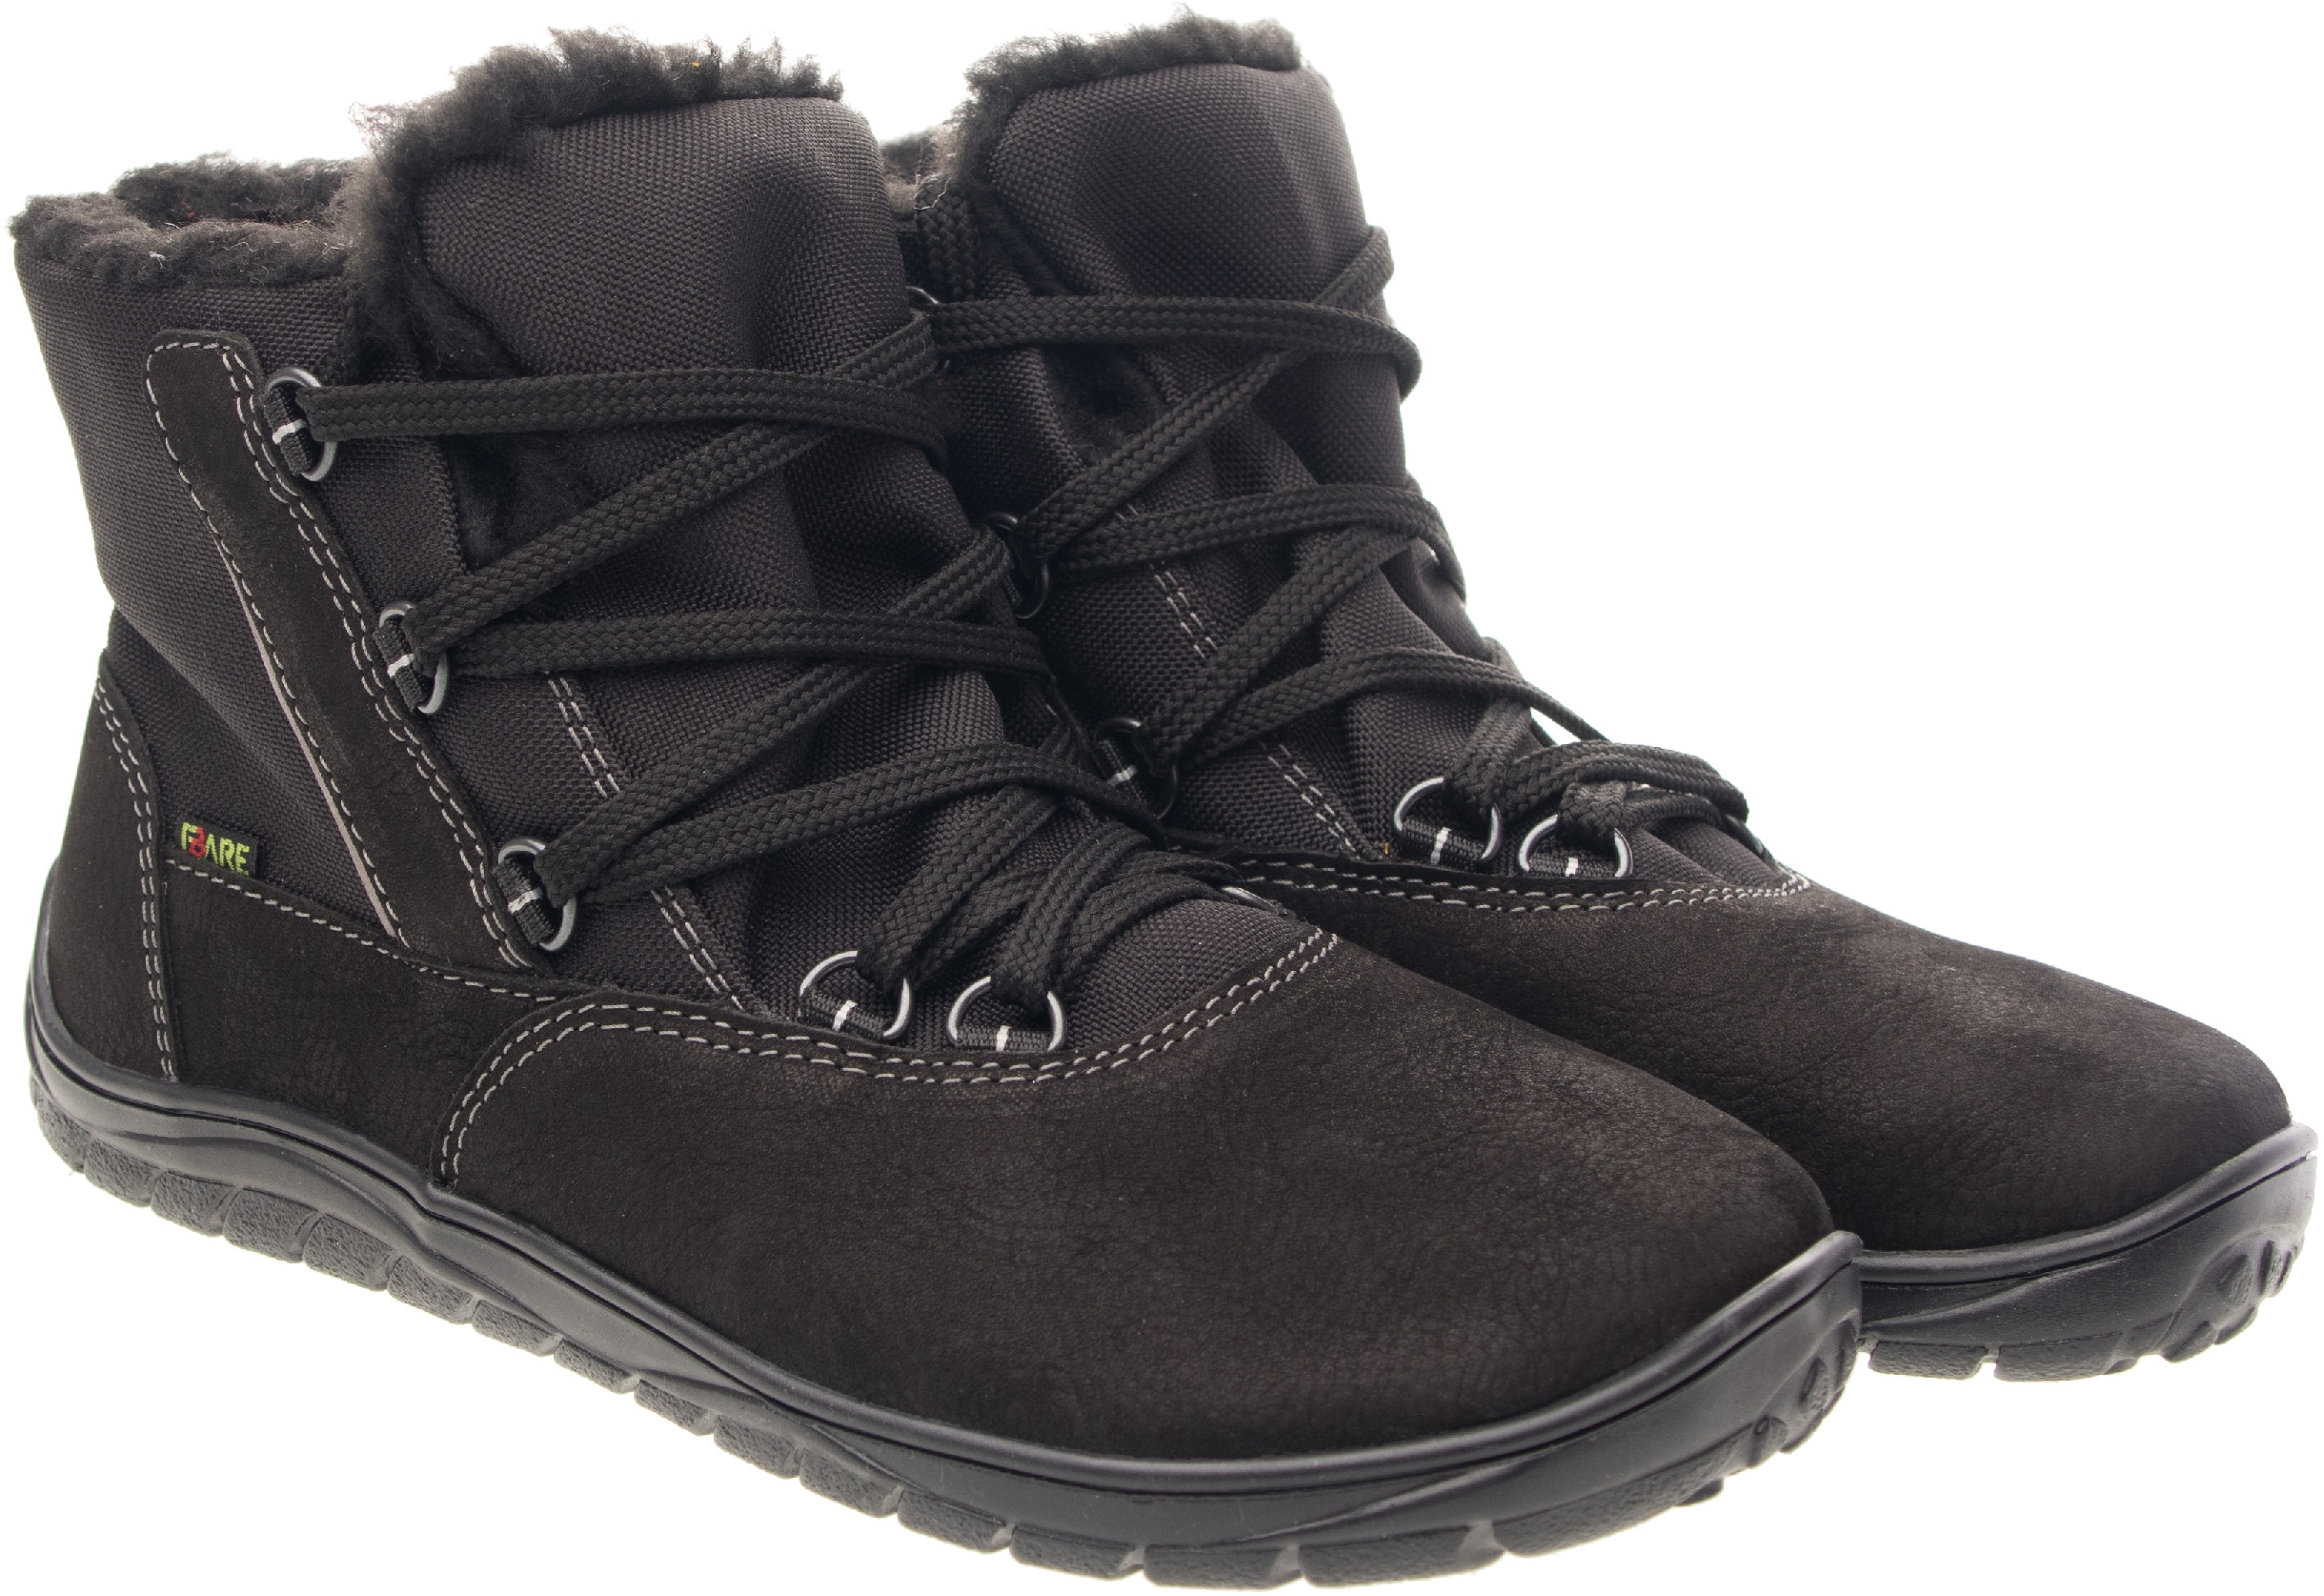 Fare Bare unisex zimní nepromokavé boty B5643112 Velikost obuvi: 35